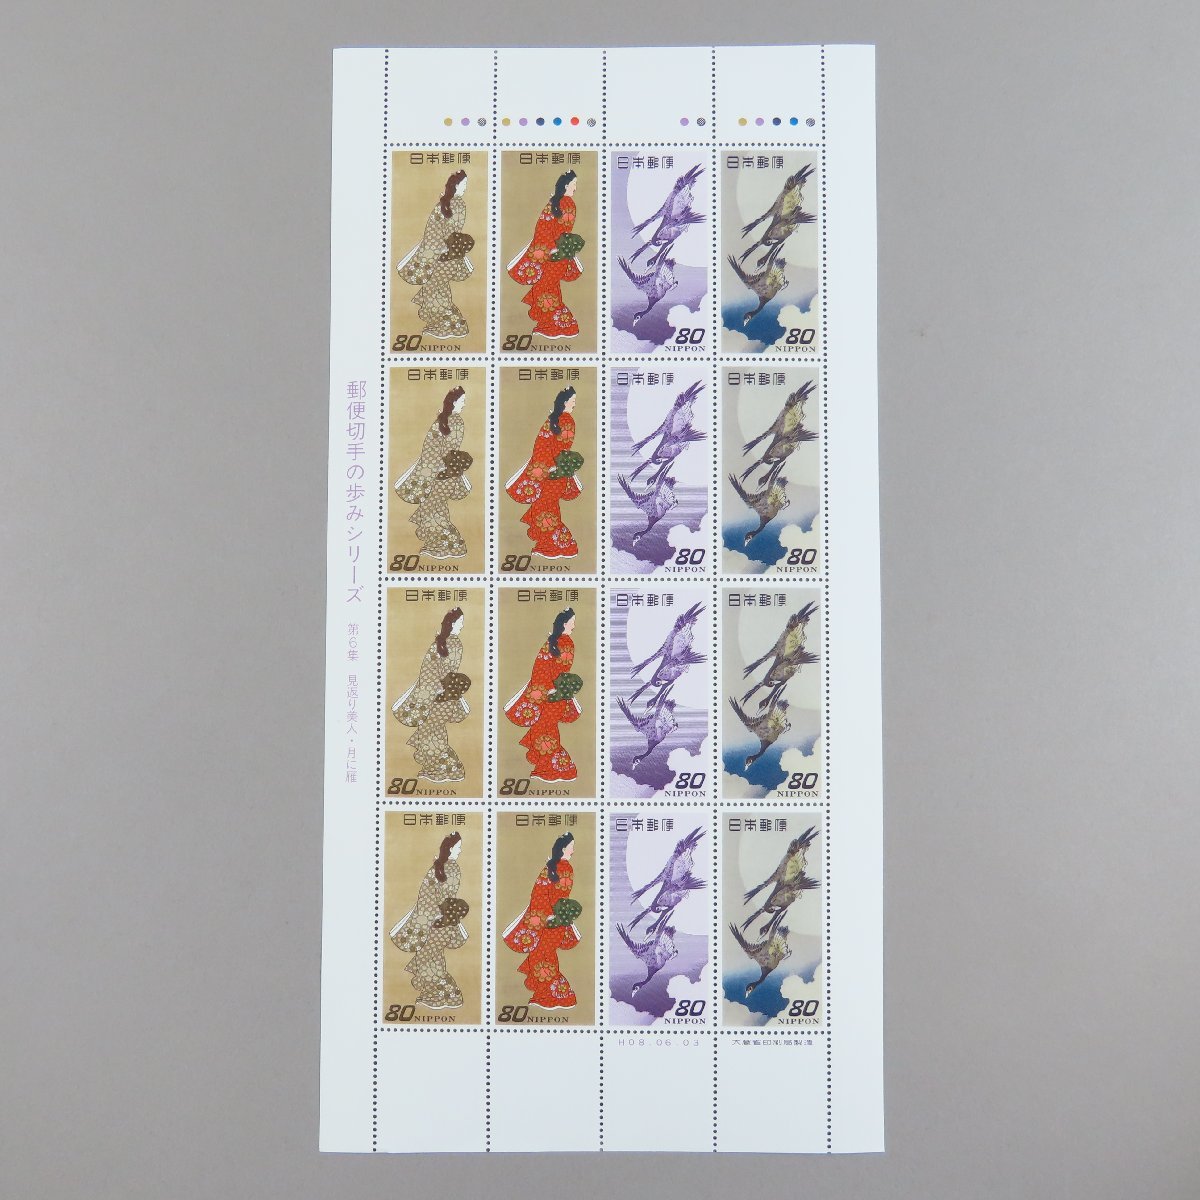 【切手2449】郵便切手の歩みシリーズ 第6集 見返り美人・月に雁 1996年6月3日 80円16面1シートの画像2